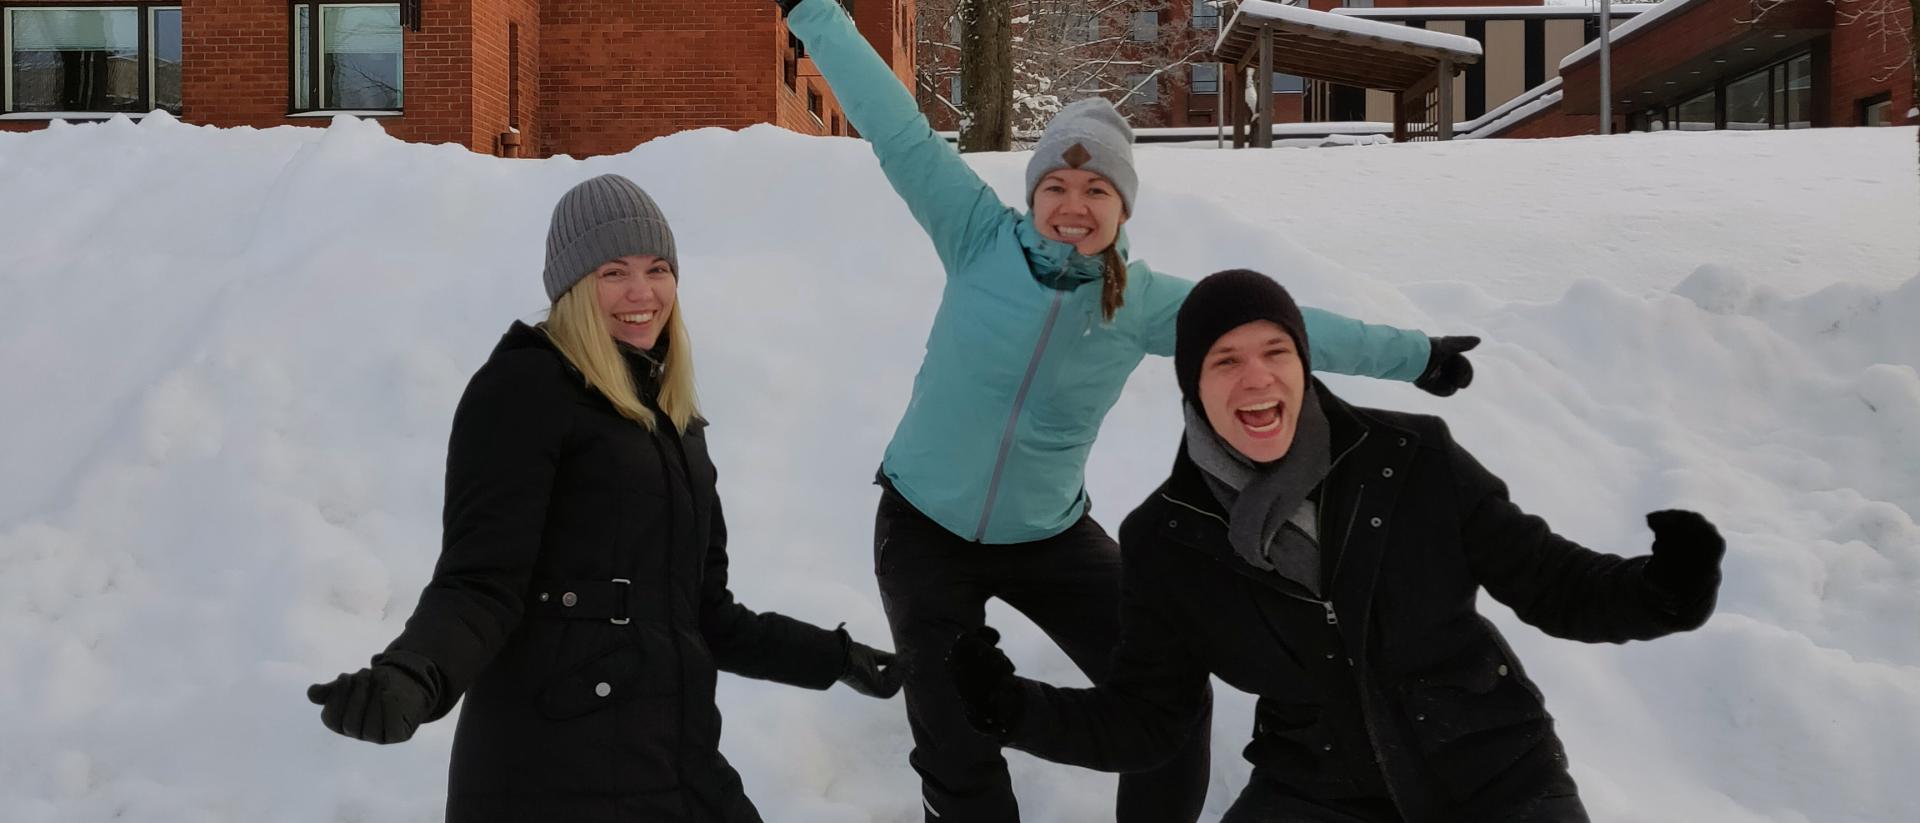 Tre anställda från Petrus församling, ute i snön. De är glada, de har kämparanda.